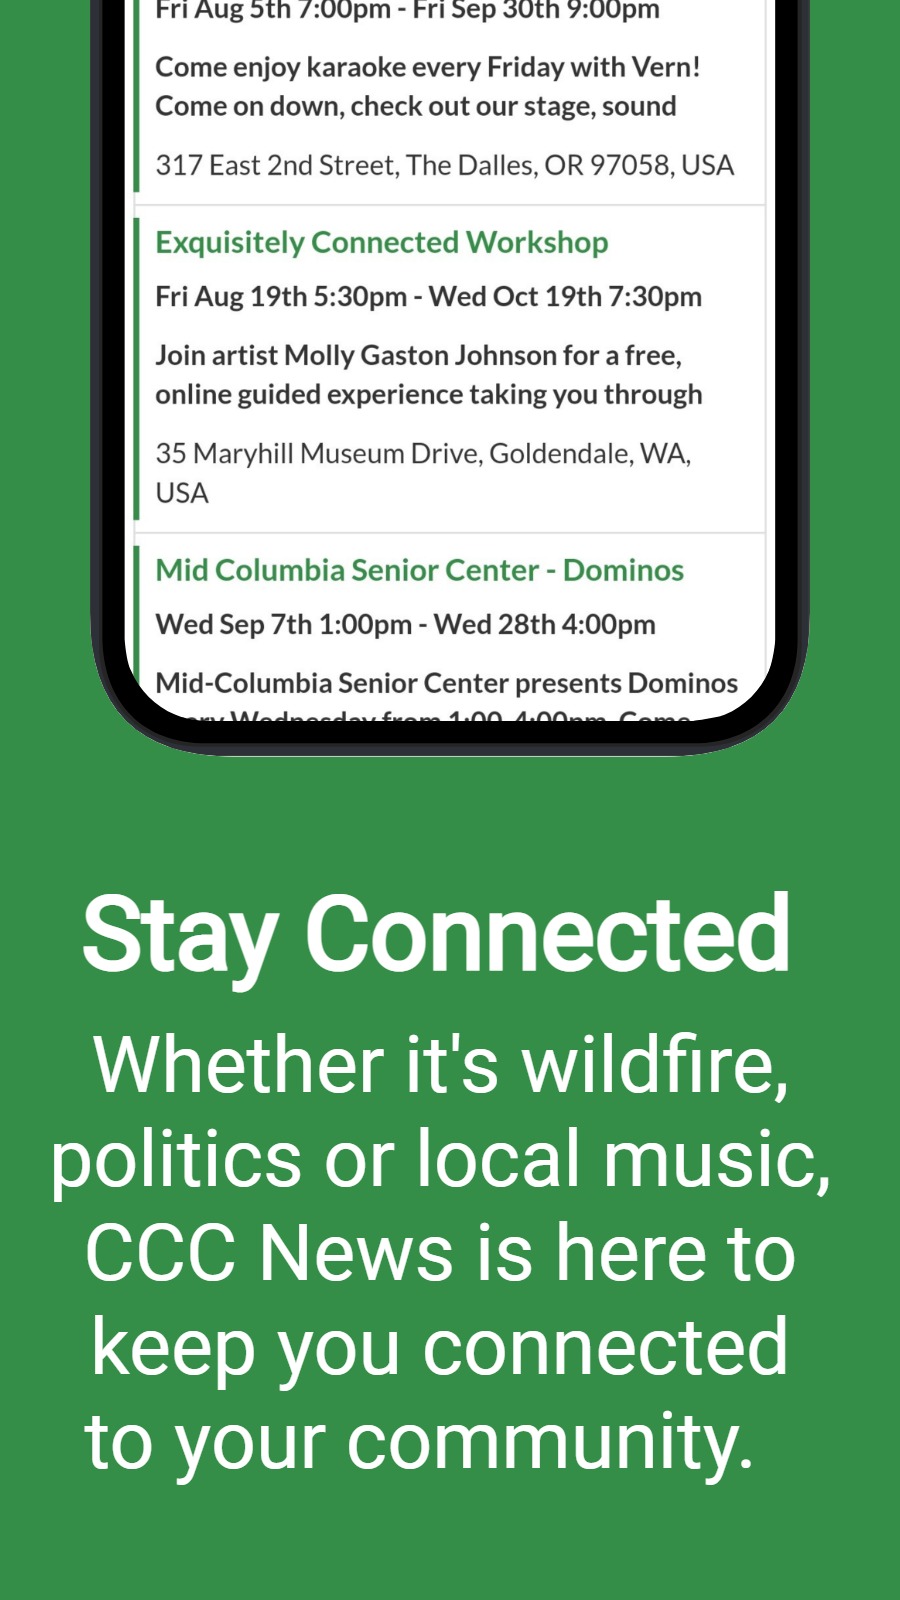 Manténgase conectado: ya sea que se trate de incendios forestales, política o música local, CCC News está aquí para mantenerlo conectado con su comunidad.